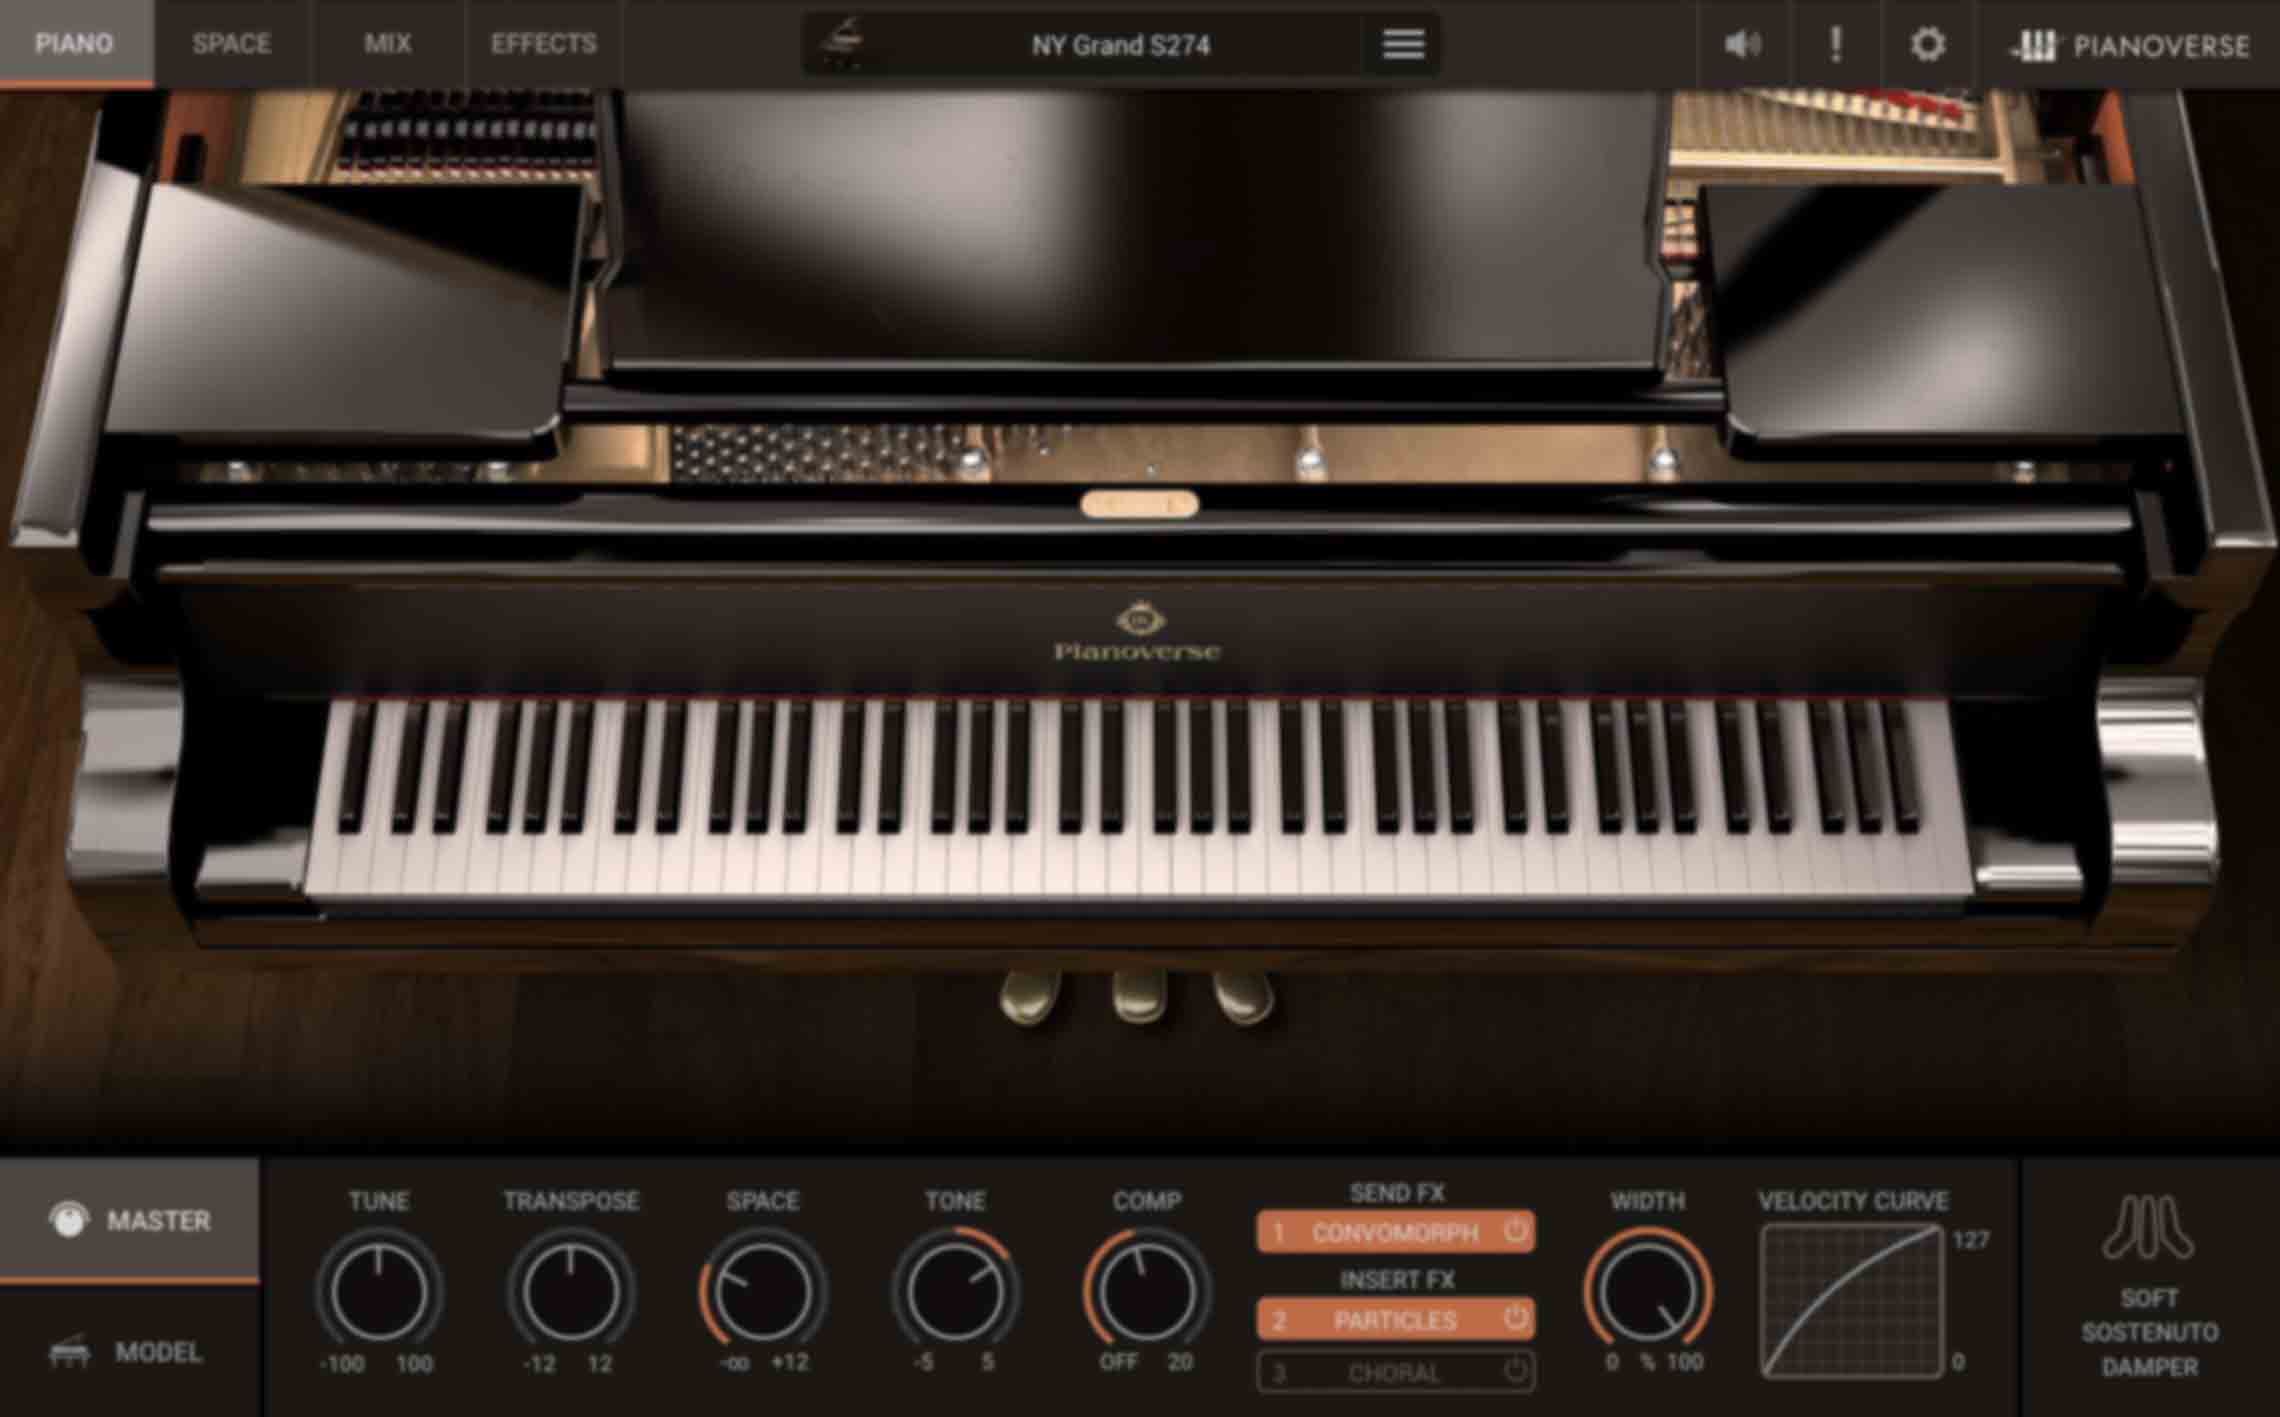 PIANO 画面/MASTER - ピアノ全般の設定を行うための主要パラメーターを表示